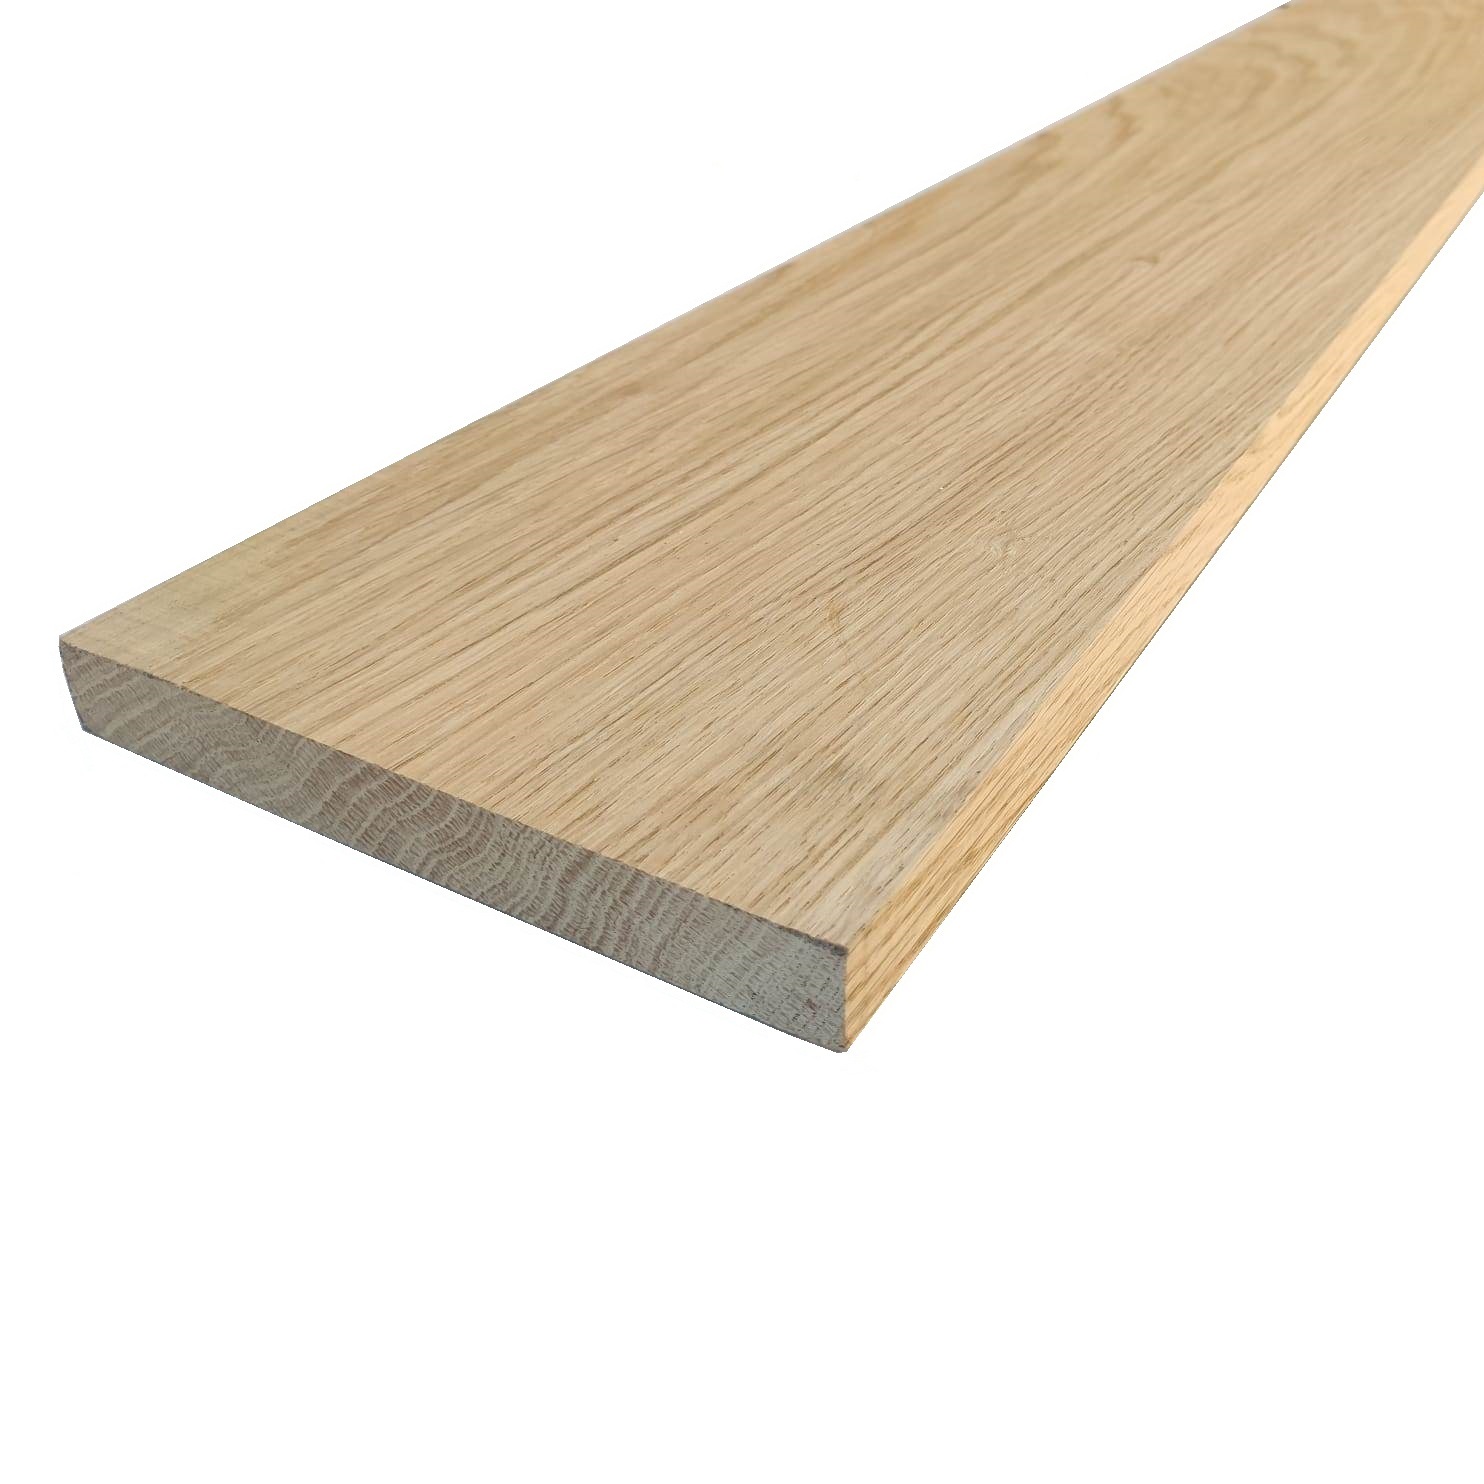 Tavola legno di Rovere Americano Bianco Refilato Piallato mm 21 x 190 x 2350